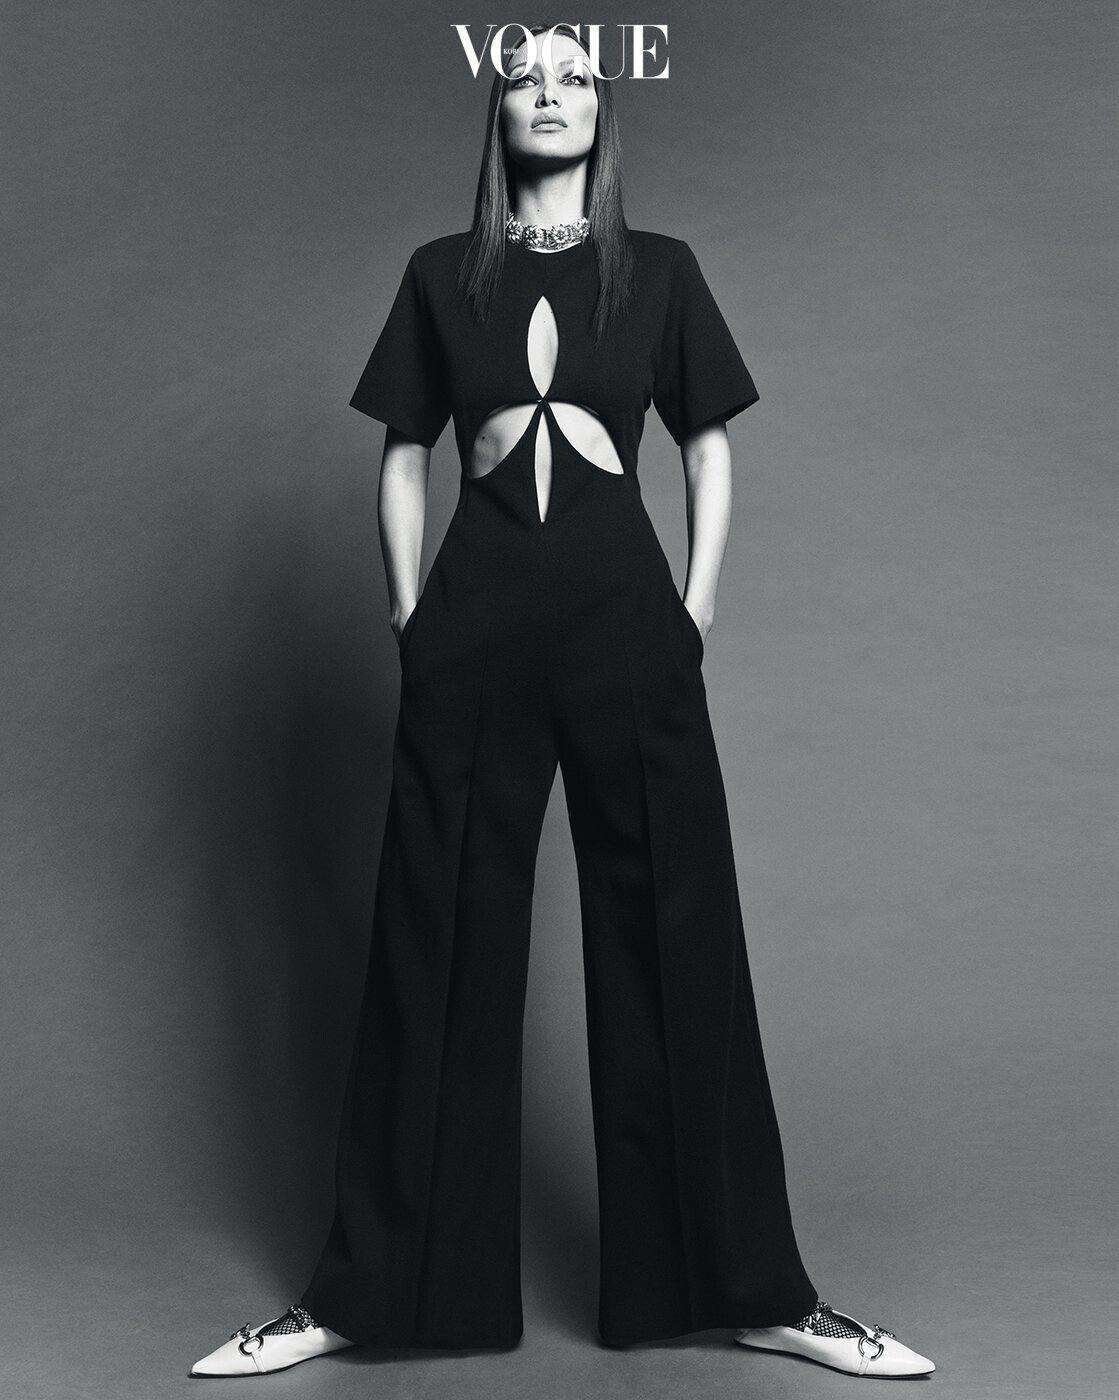 Bella Hadid by Luigi Iango Vogue Korea April 2020 (2).jpg